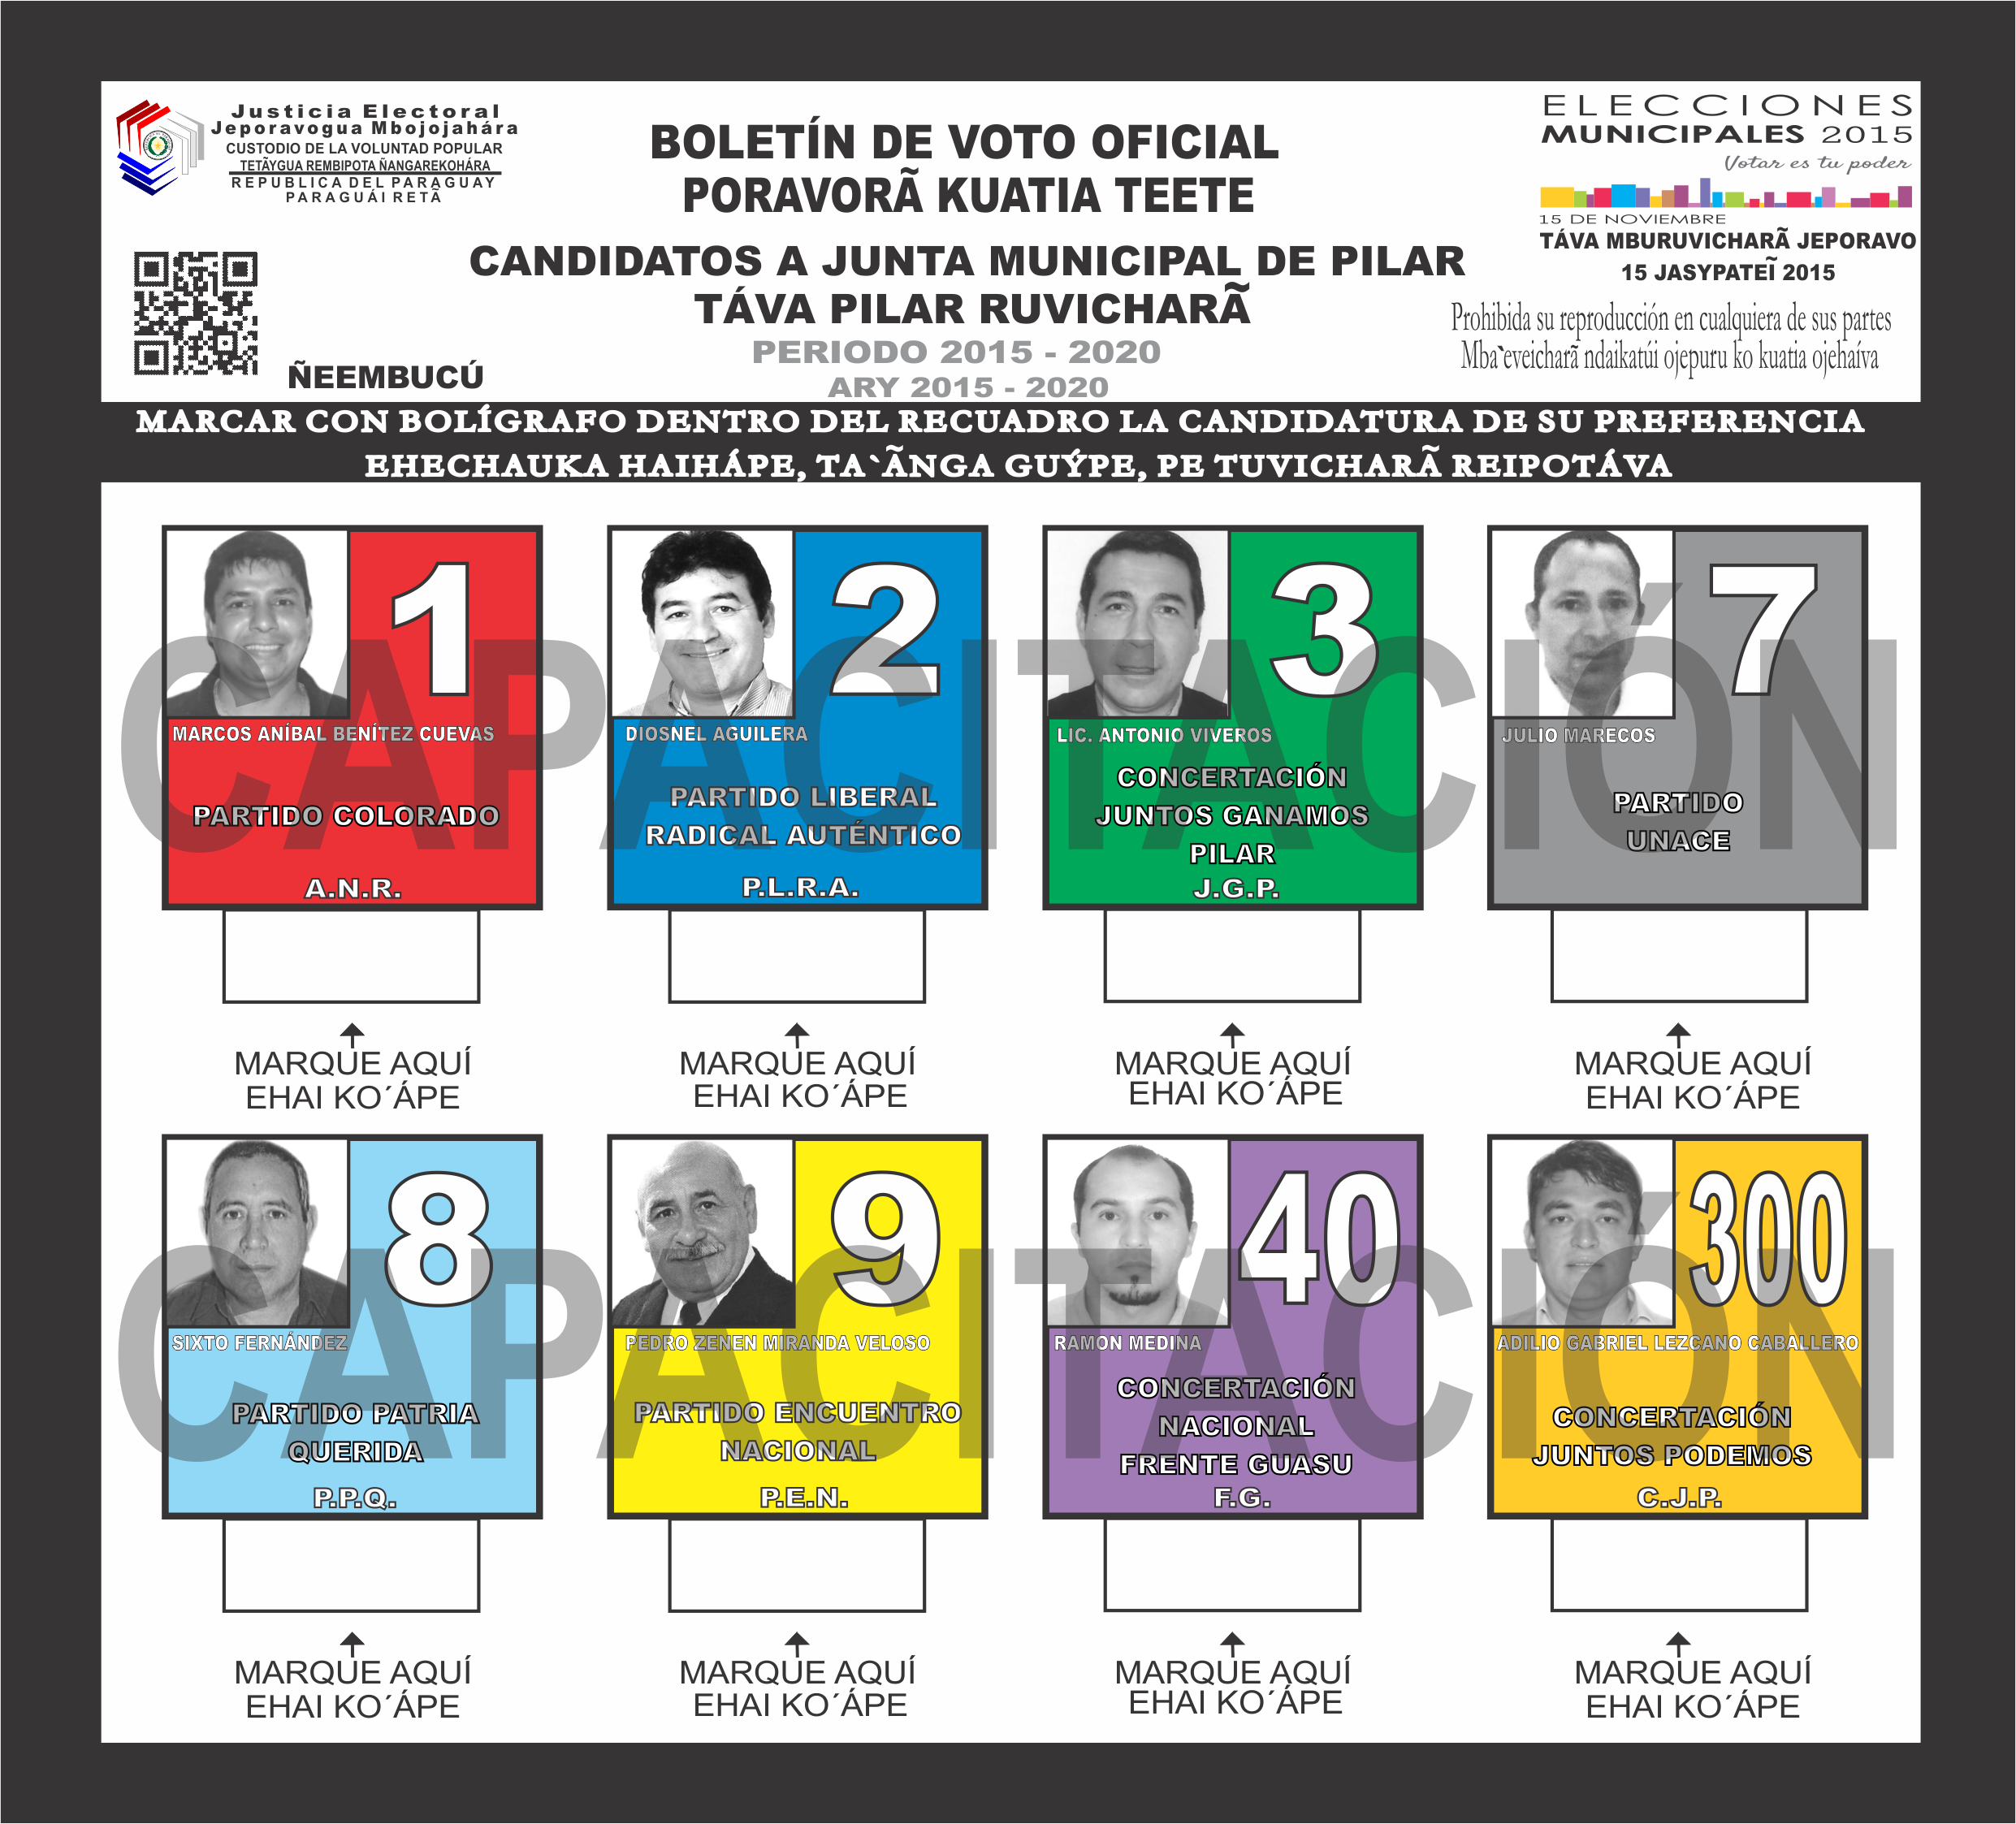 Boletines de voto del Distrito PILAR del departamento 12 - Ñeembucu- Junta Miunicipal